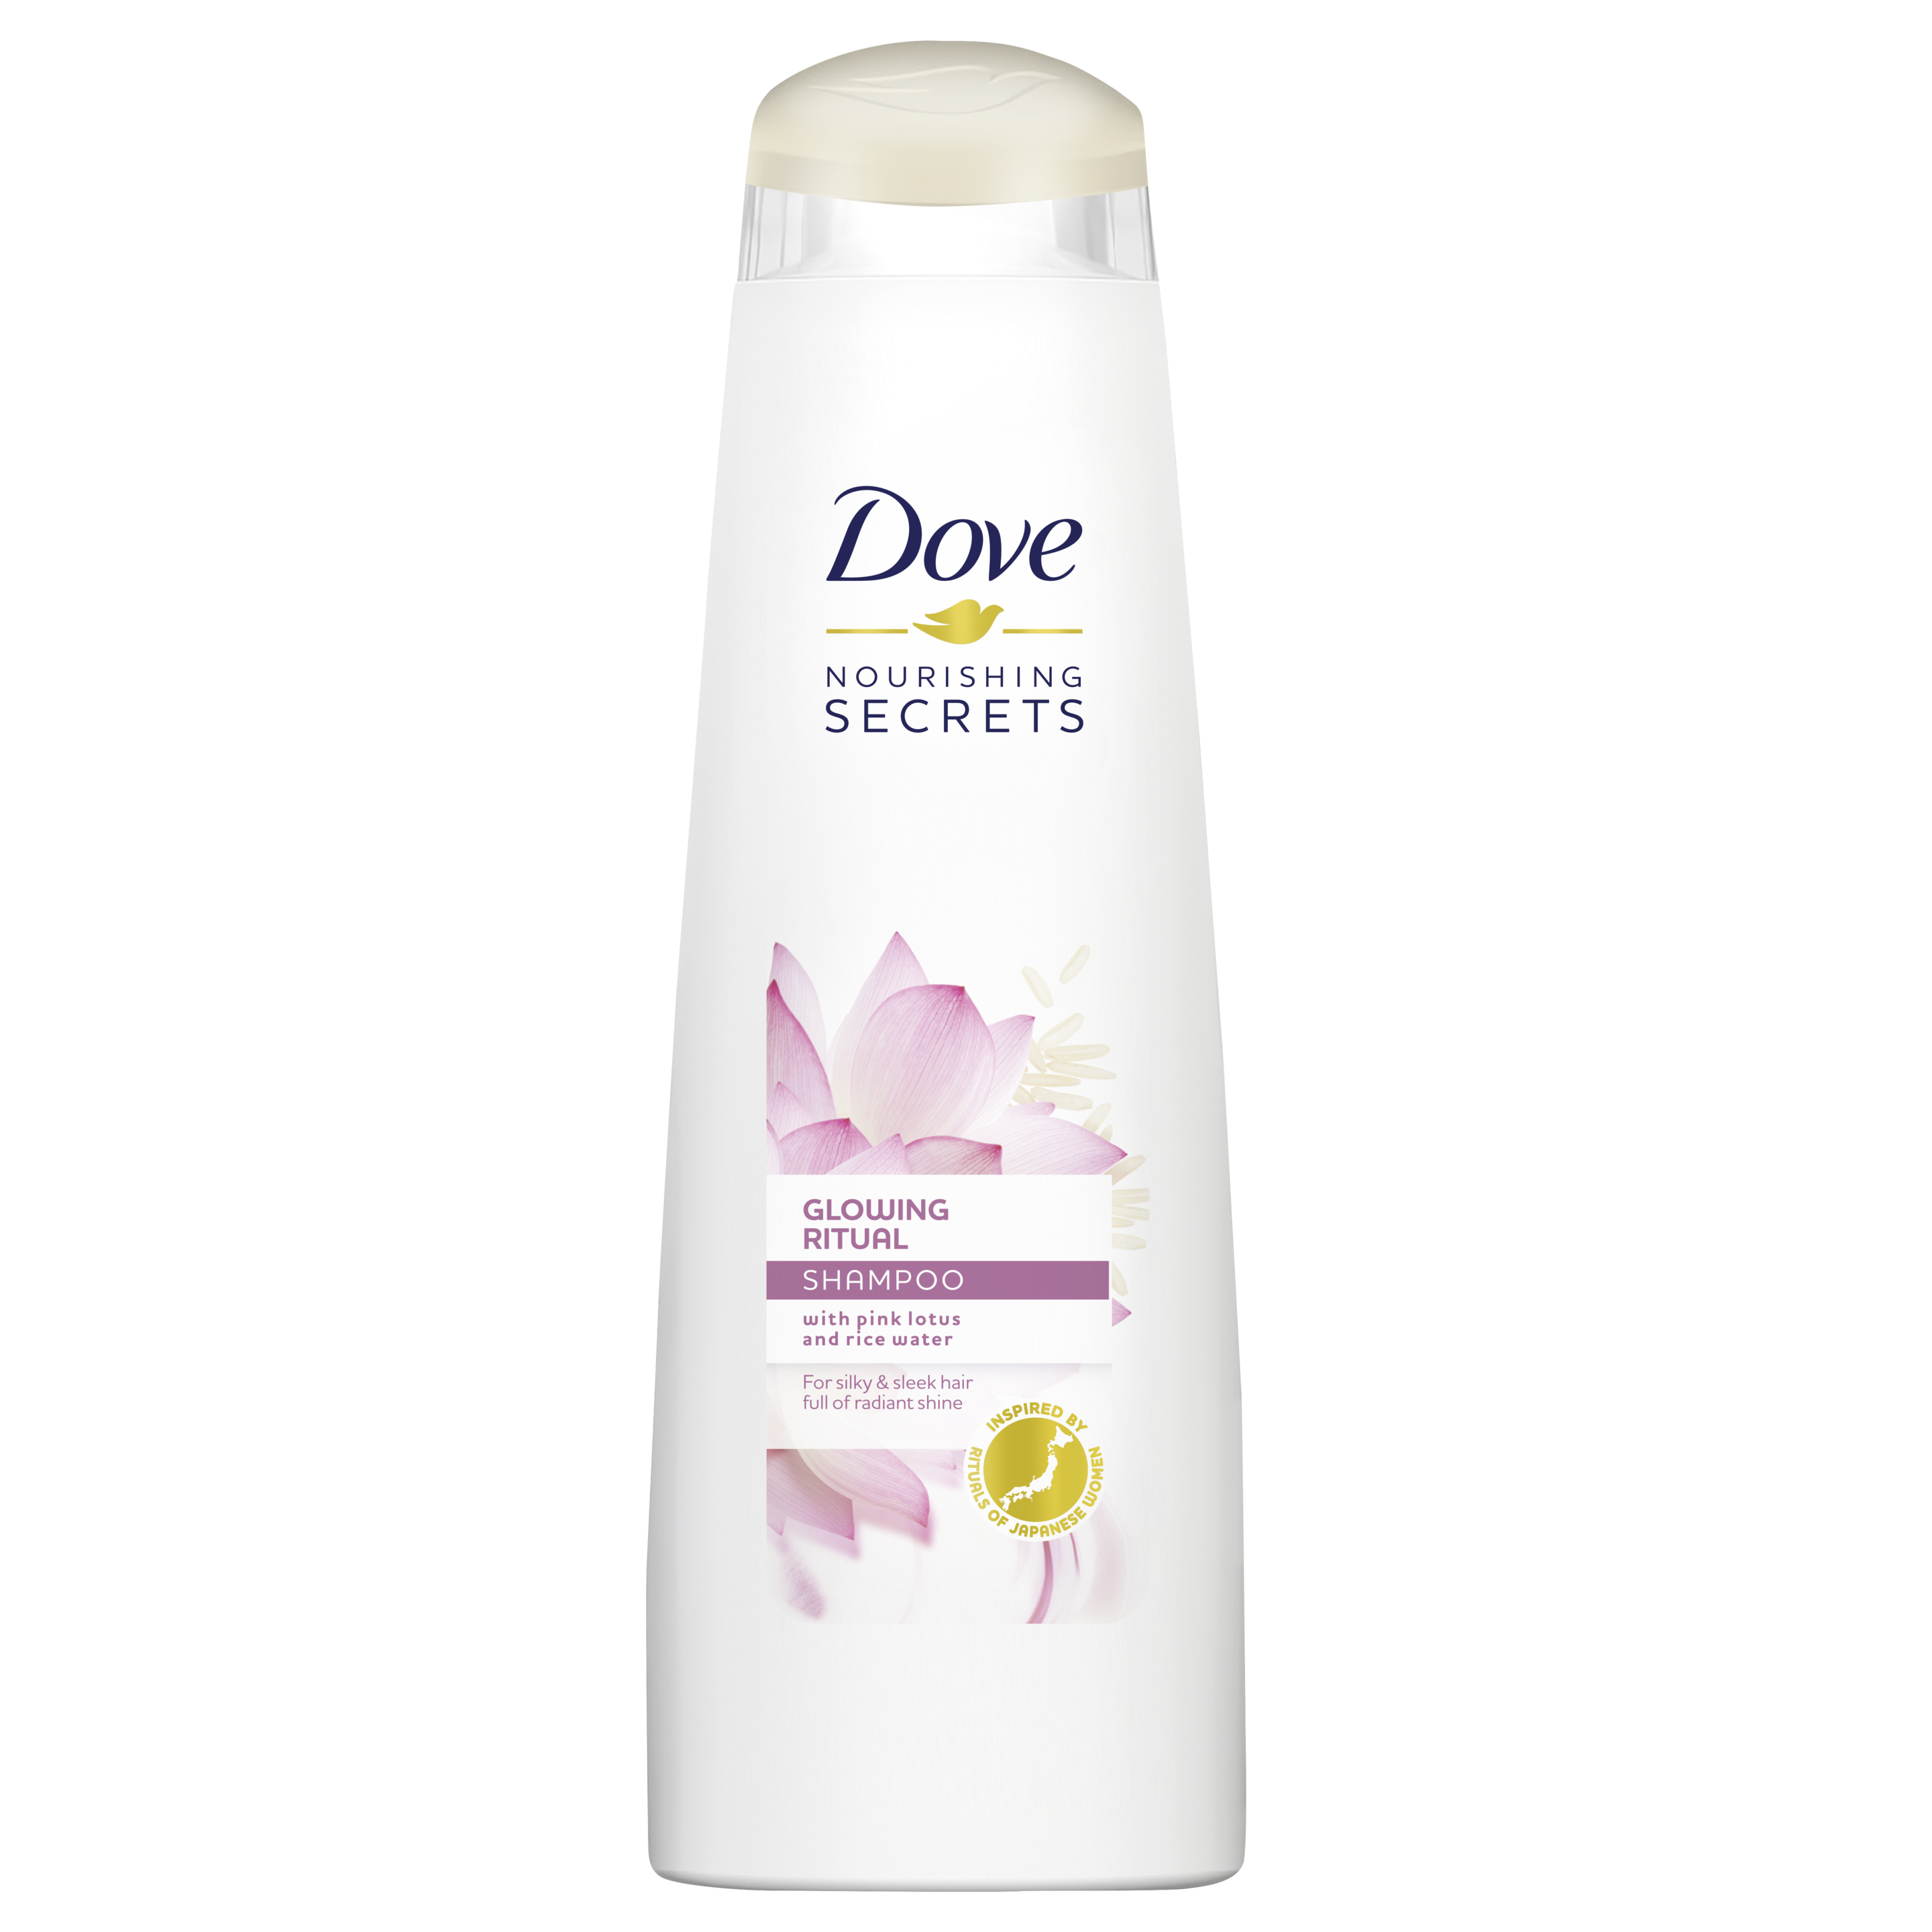 Dove Nourishing Secrets Glowing Ritual Shampoo 250ml